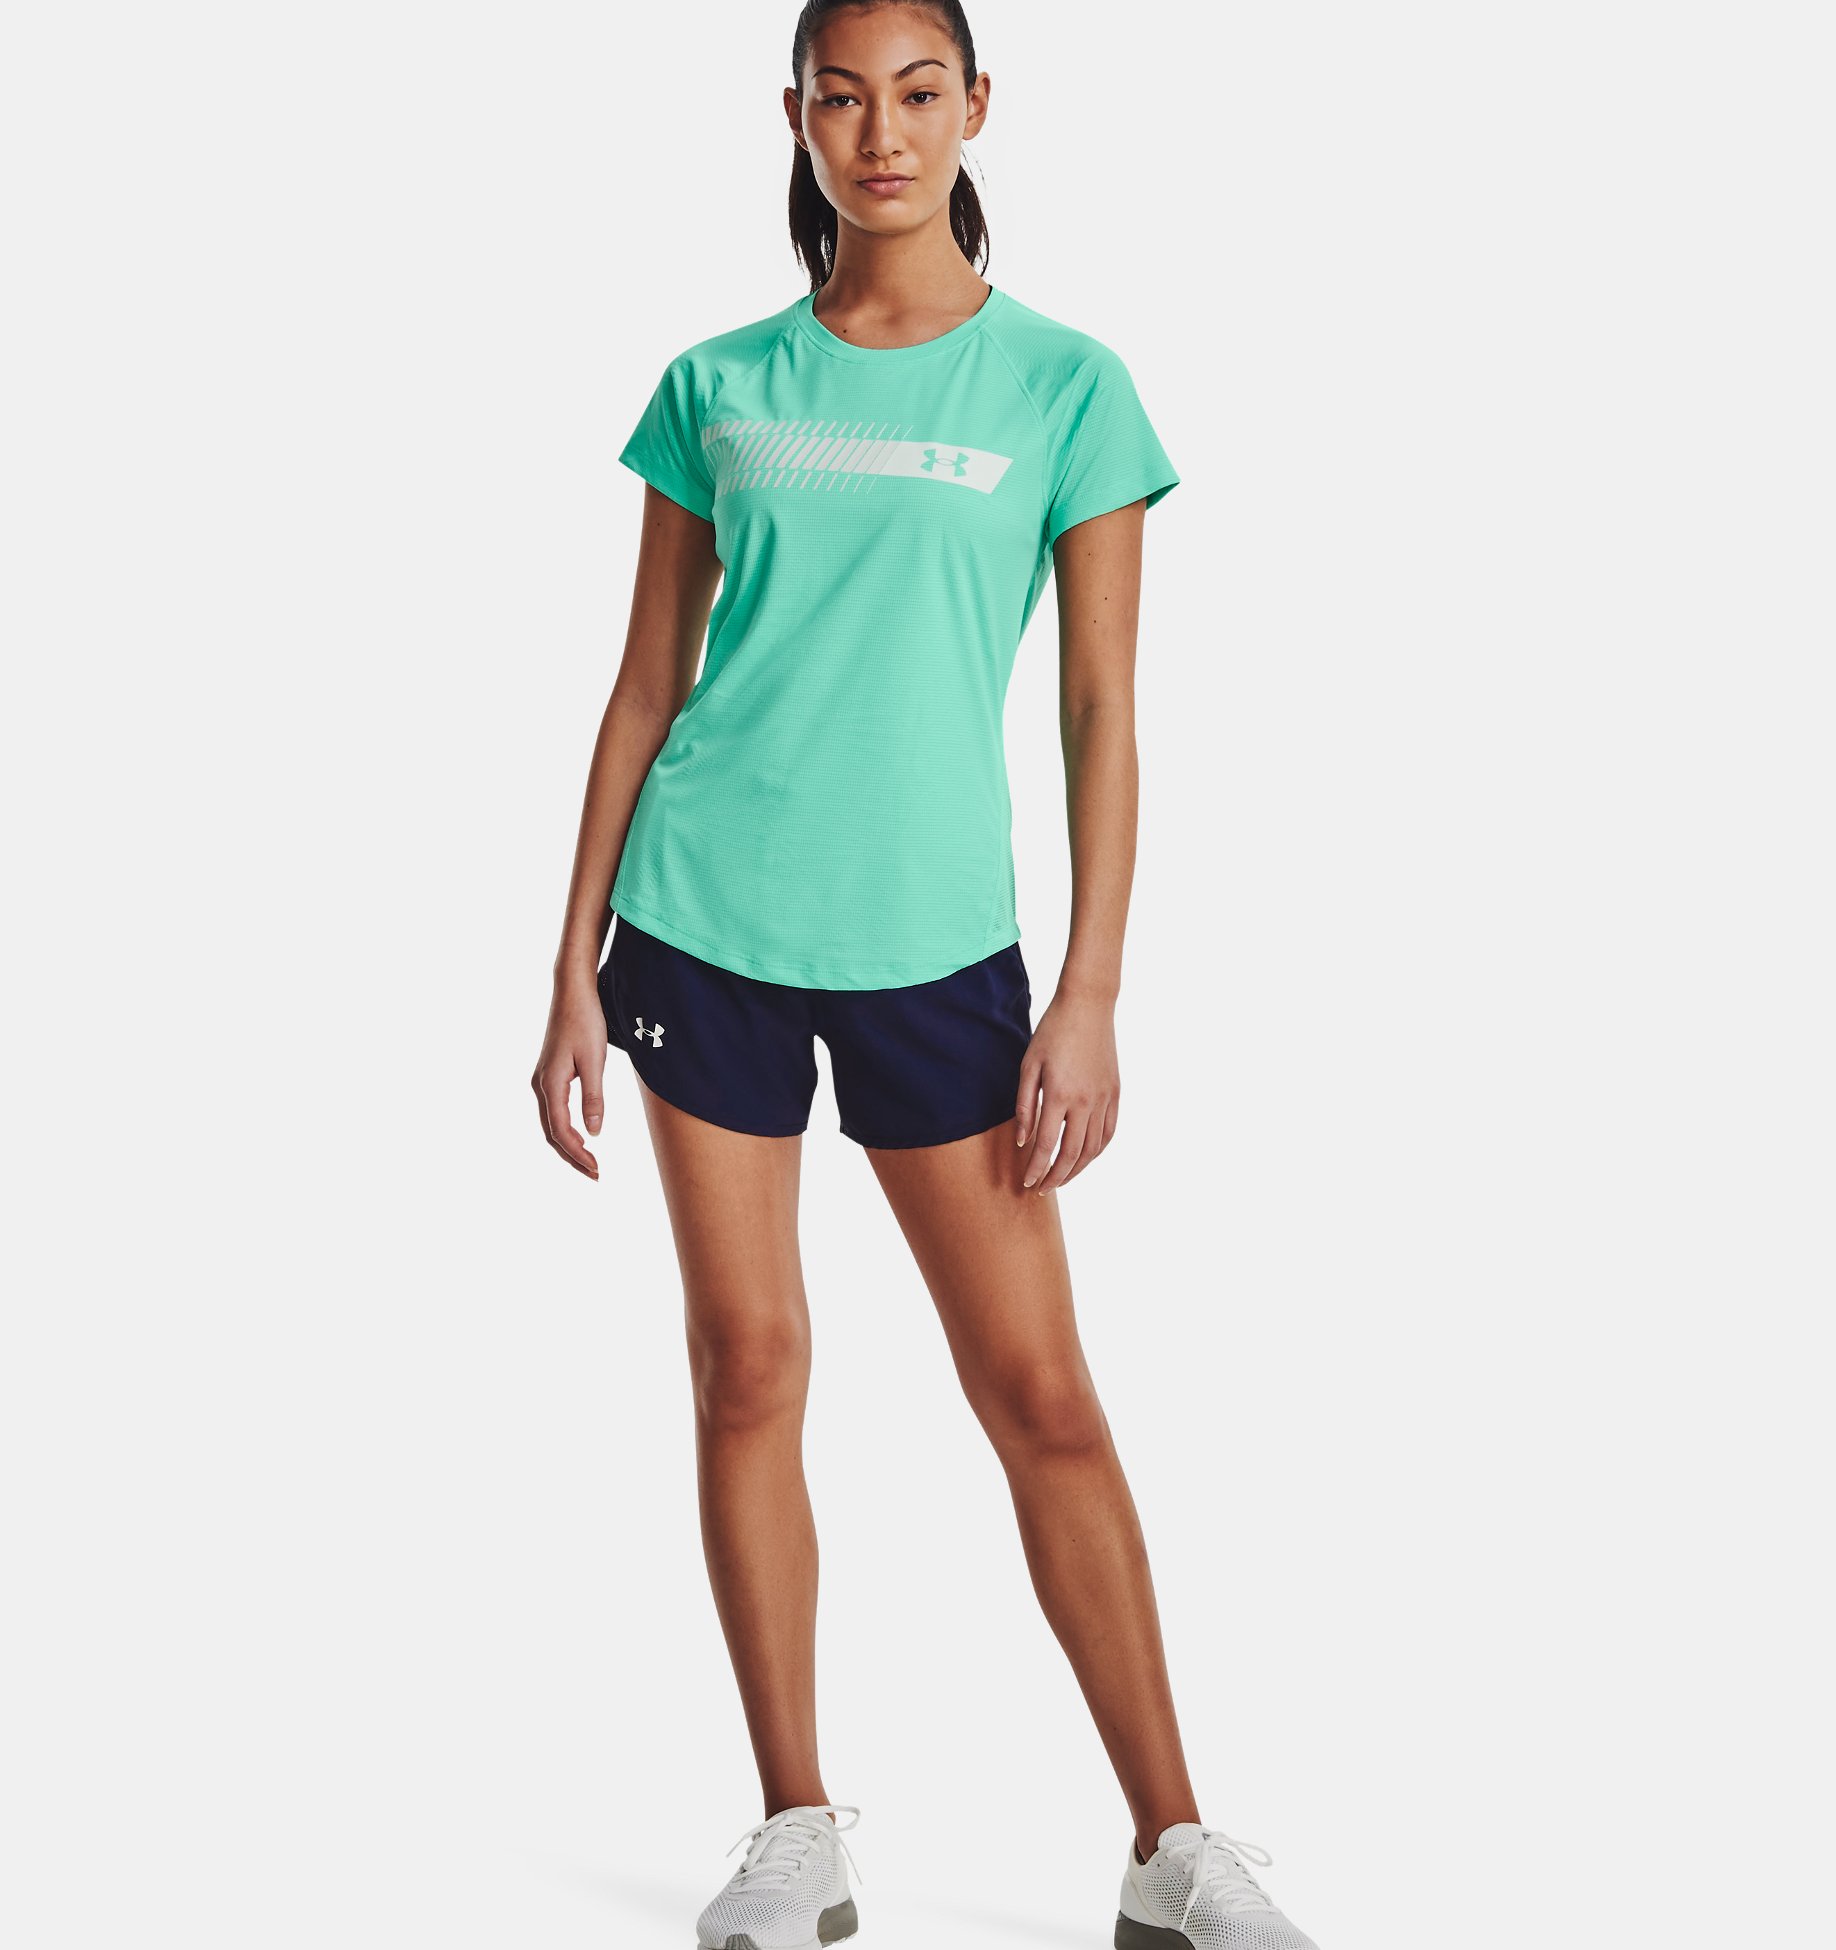 Under Armour Threadborne Womens Running T-Shirt Blue Short Sleeve Top Gym  Sport 